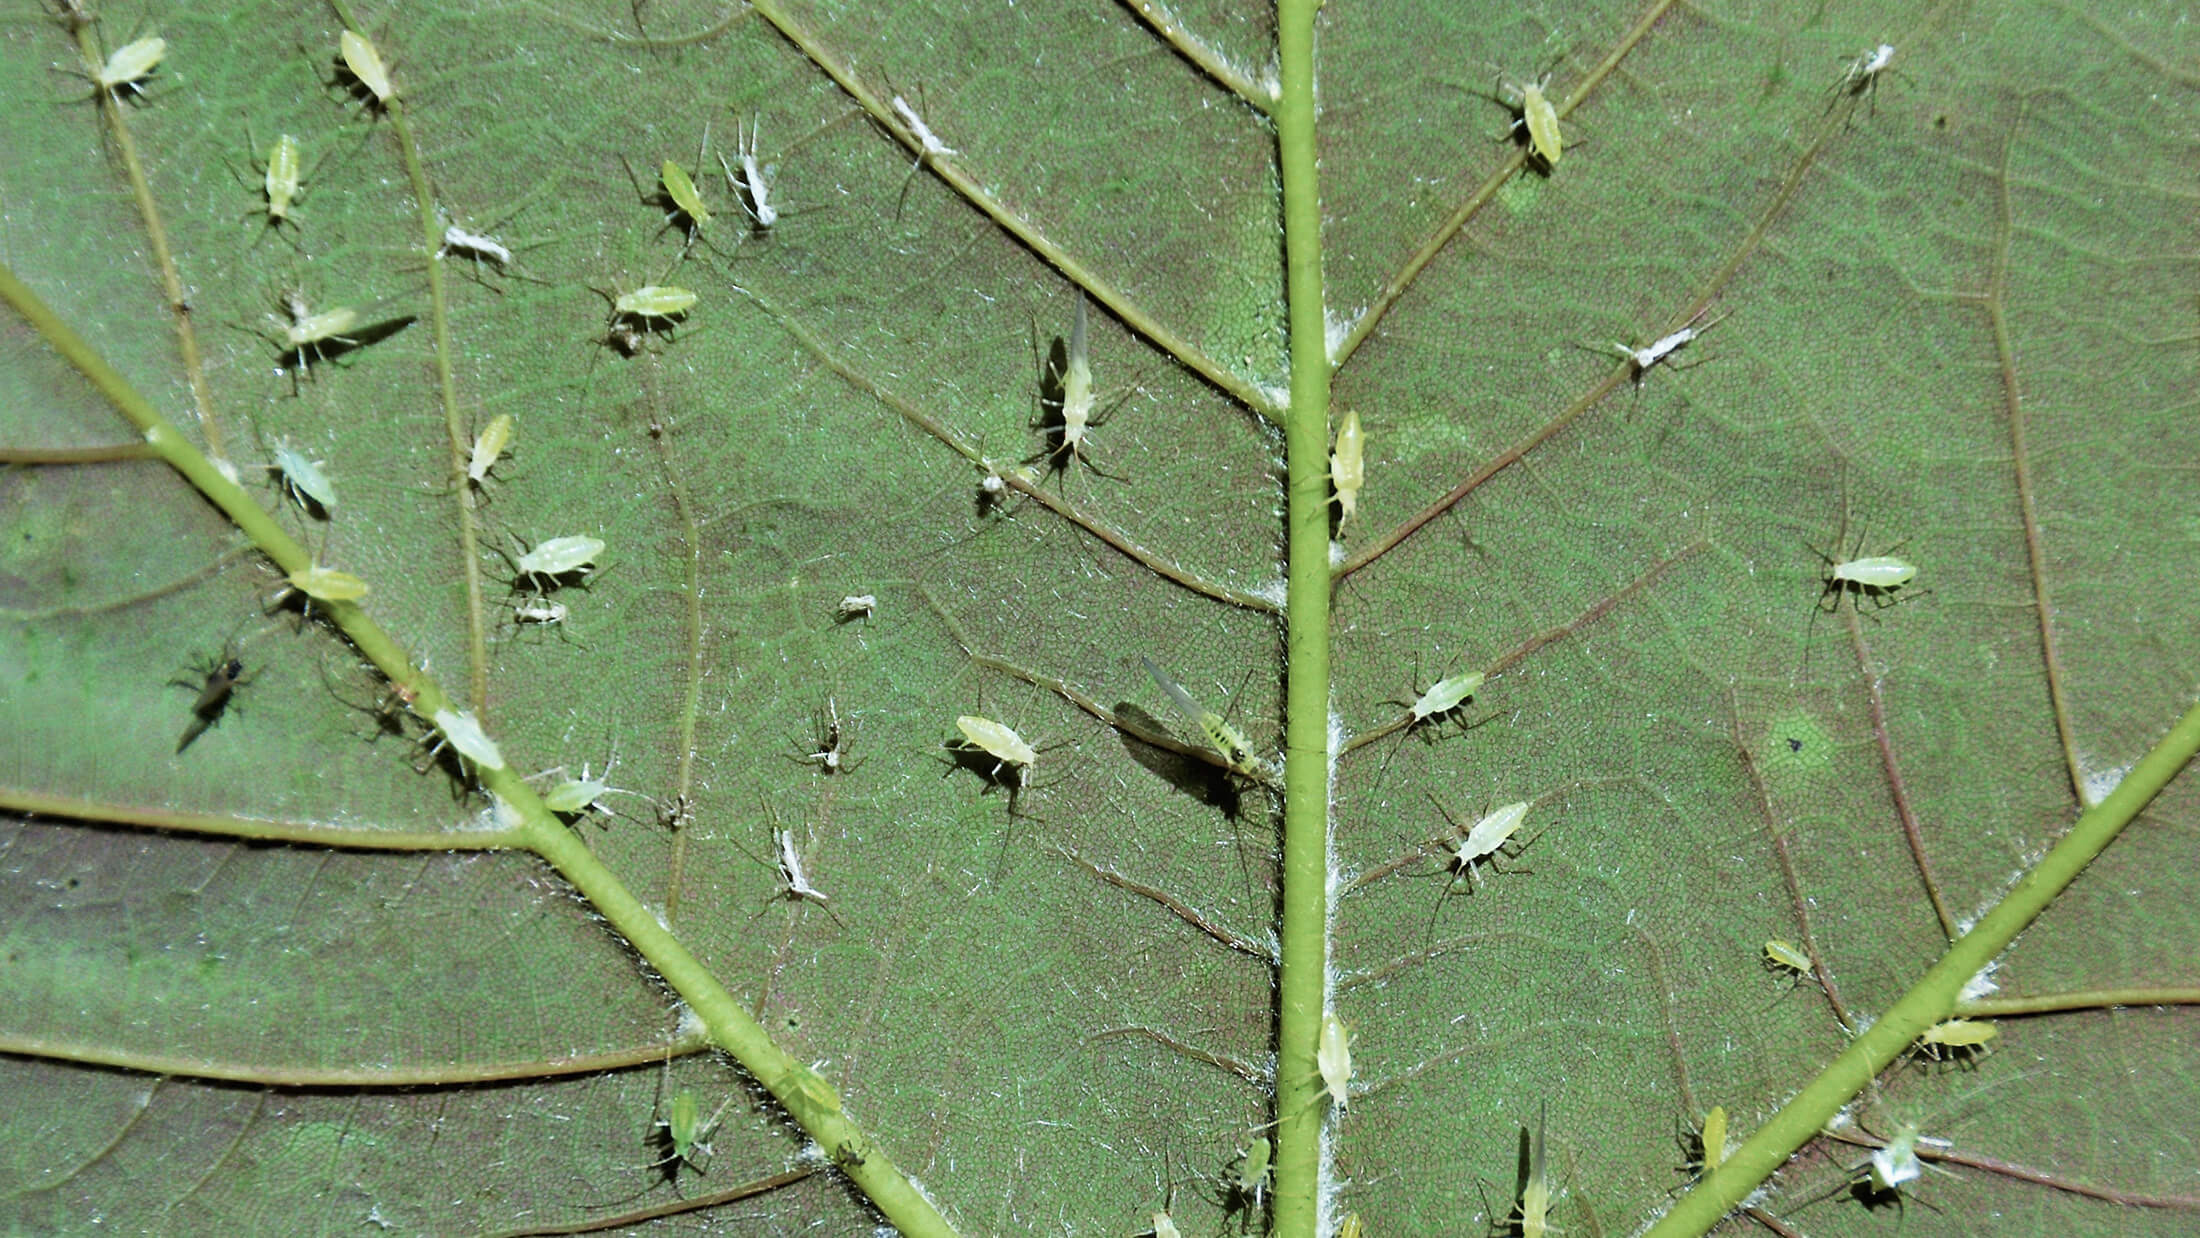 Parasites on a leaf